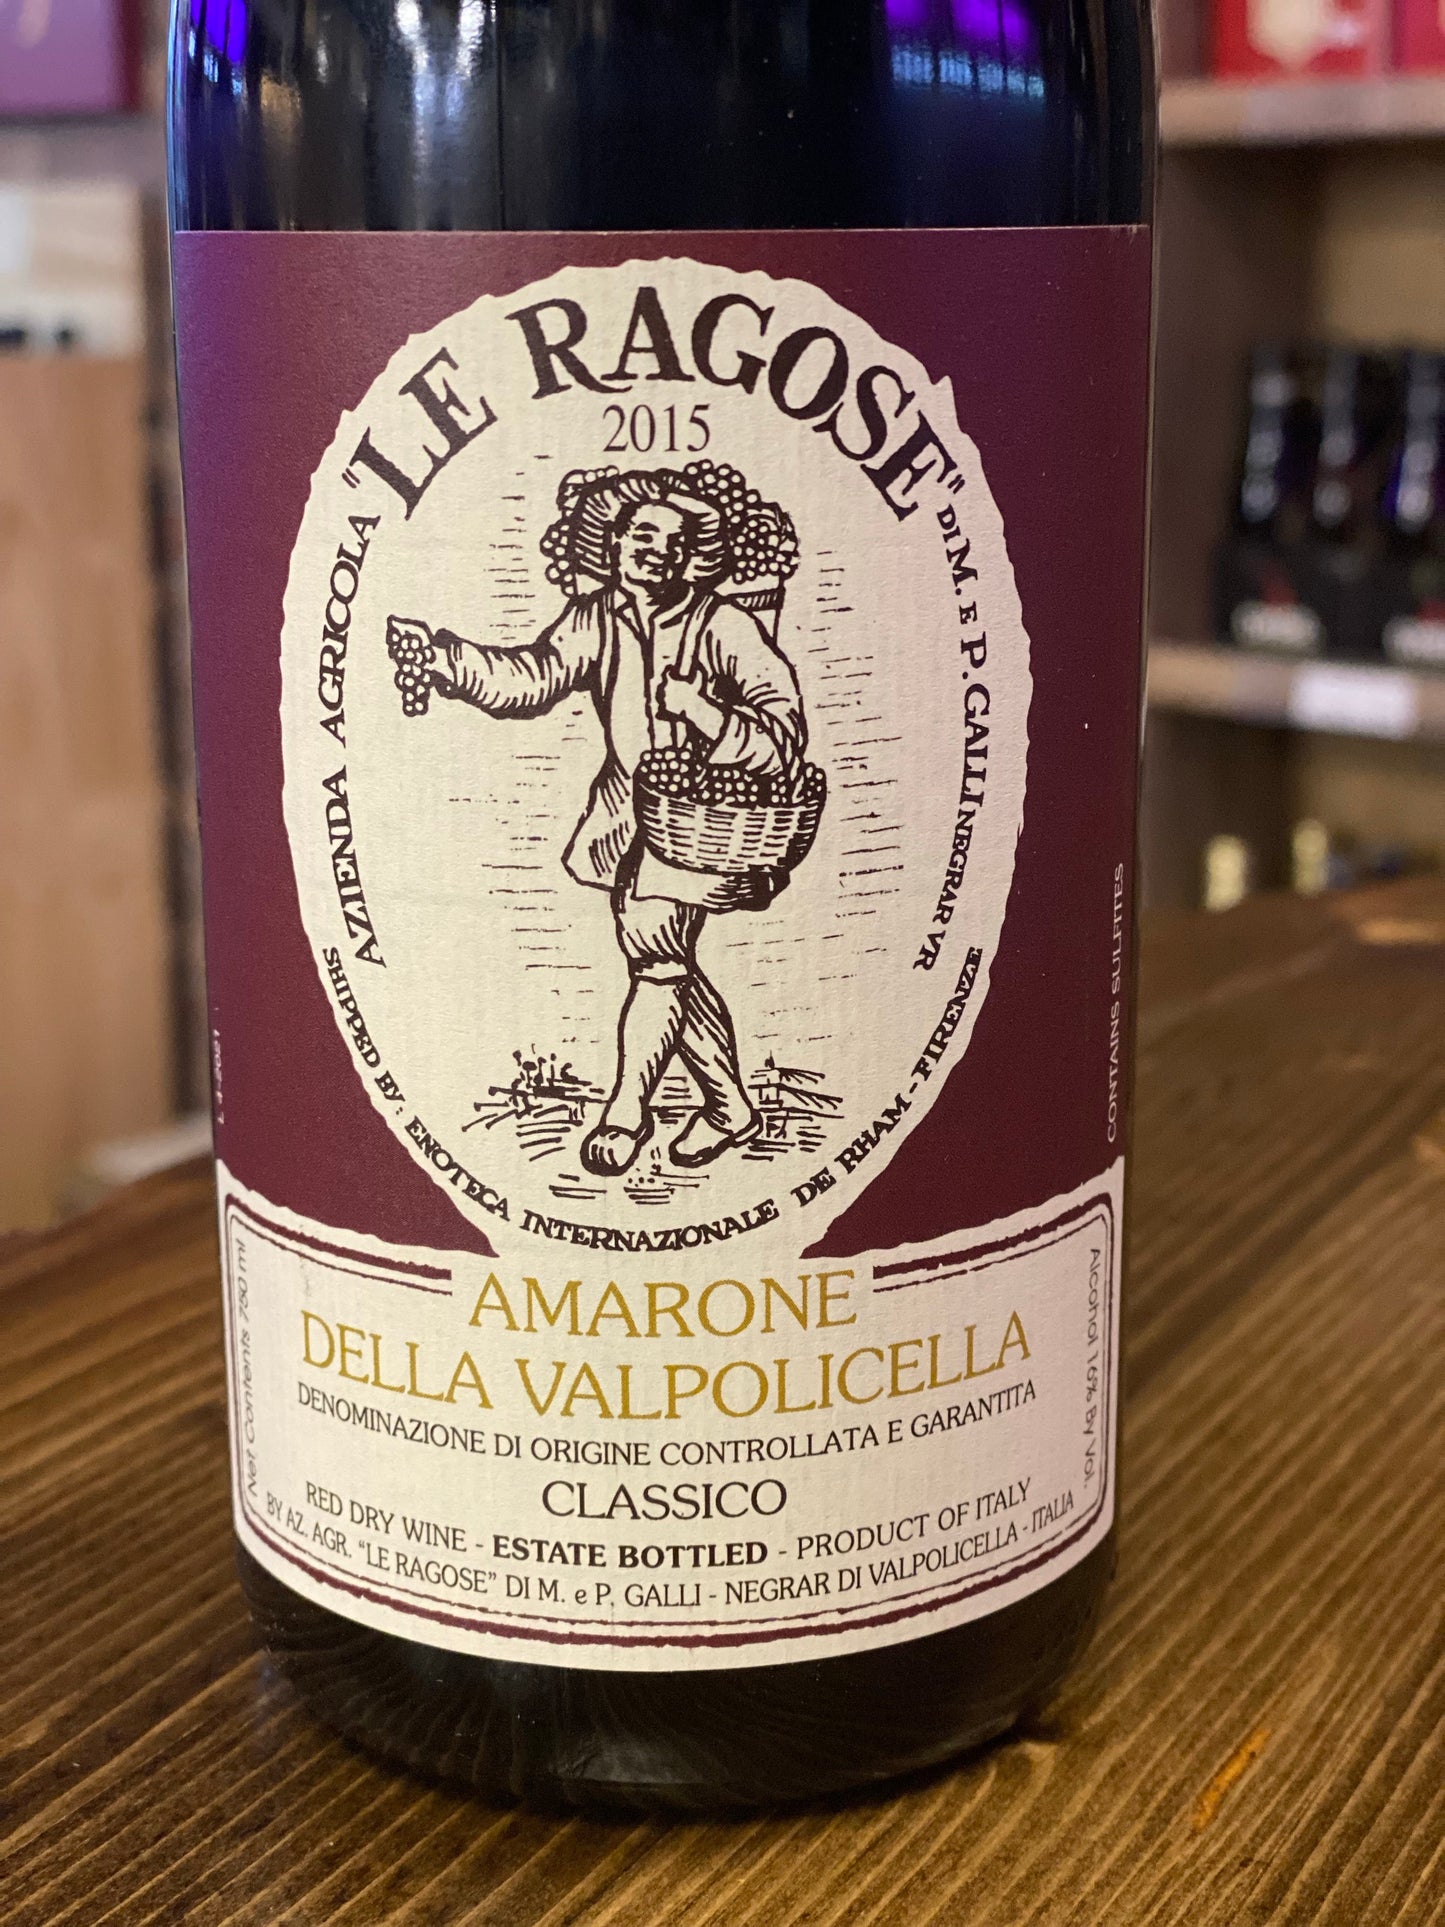 Le Ragose Amarone Del Valpolicella 'Classico' (2010)